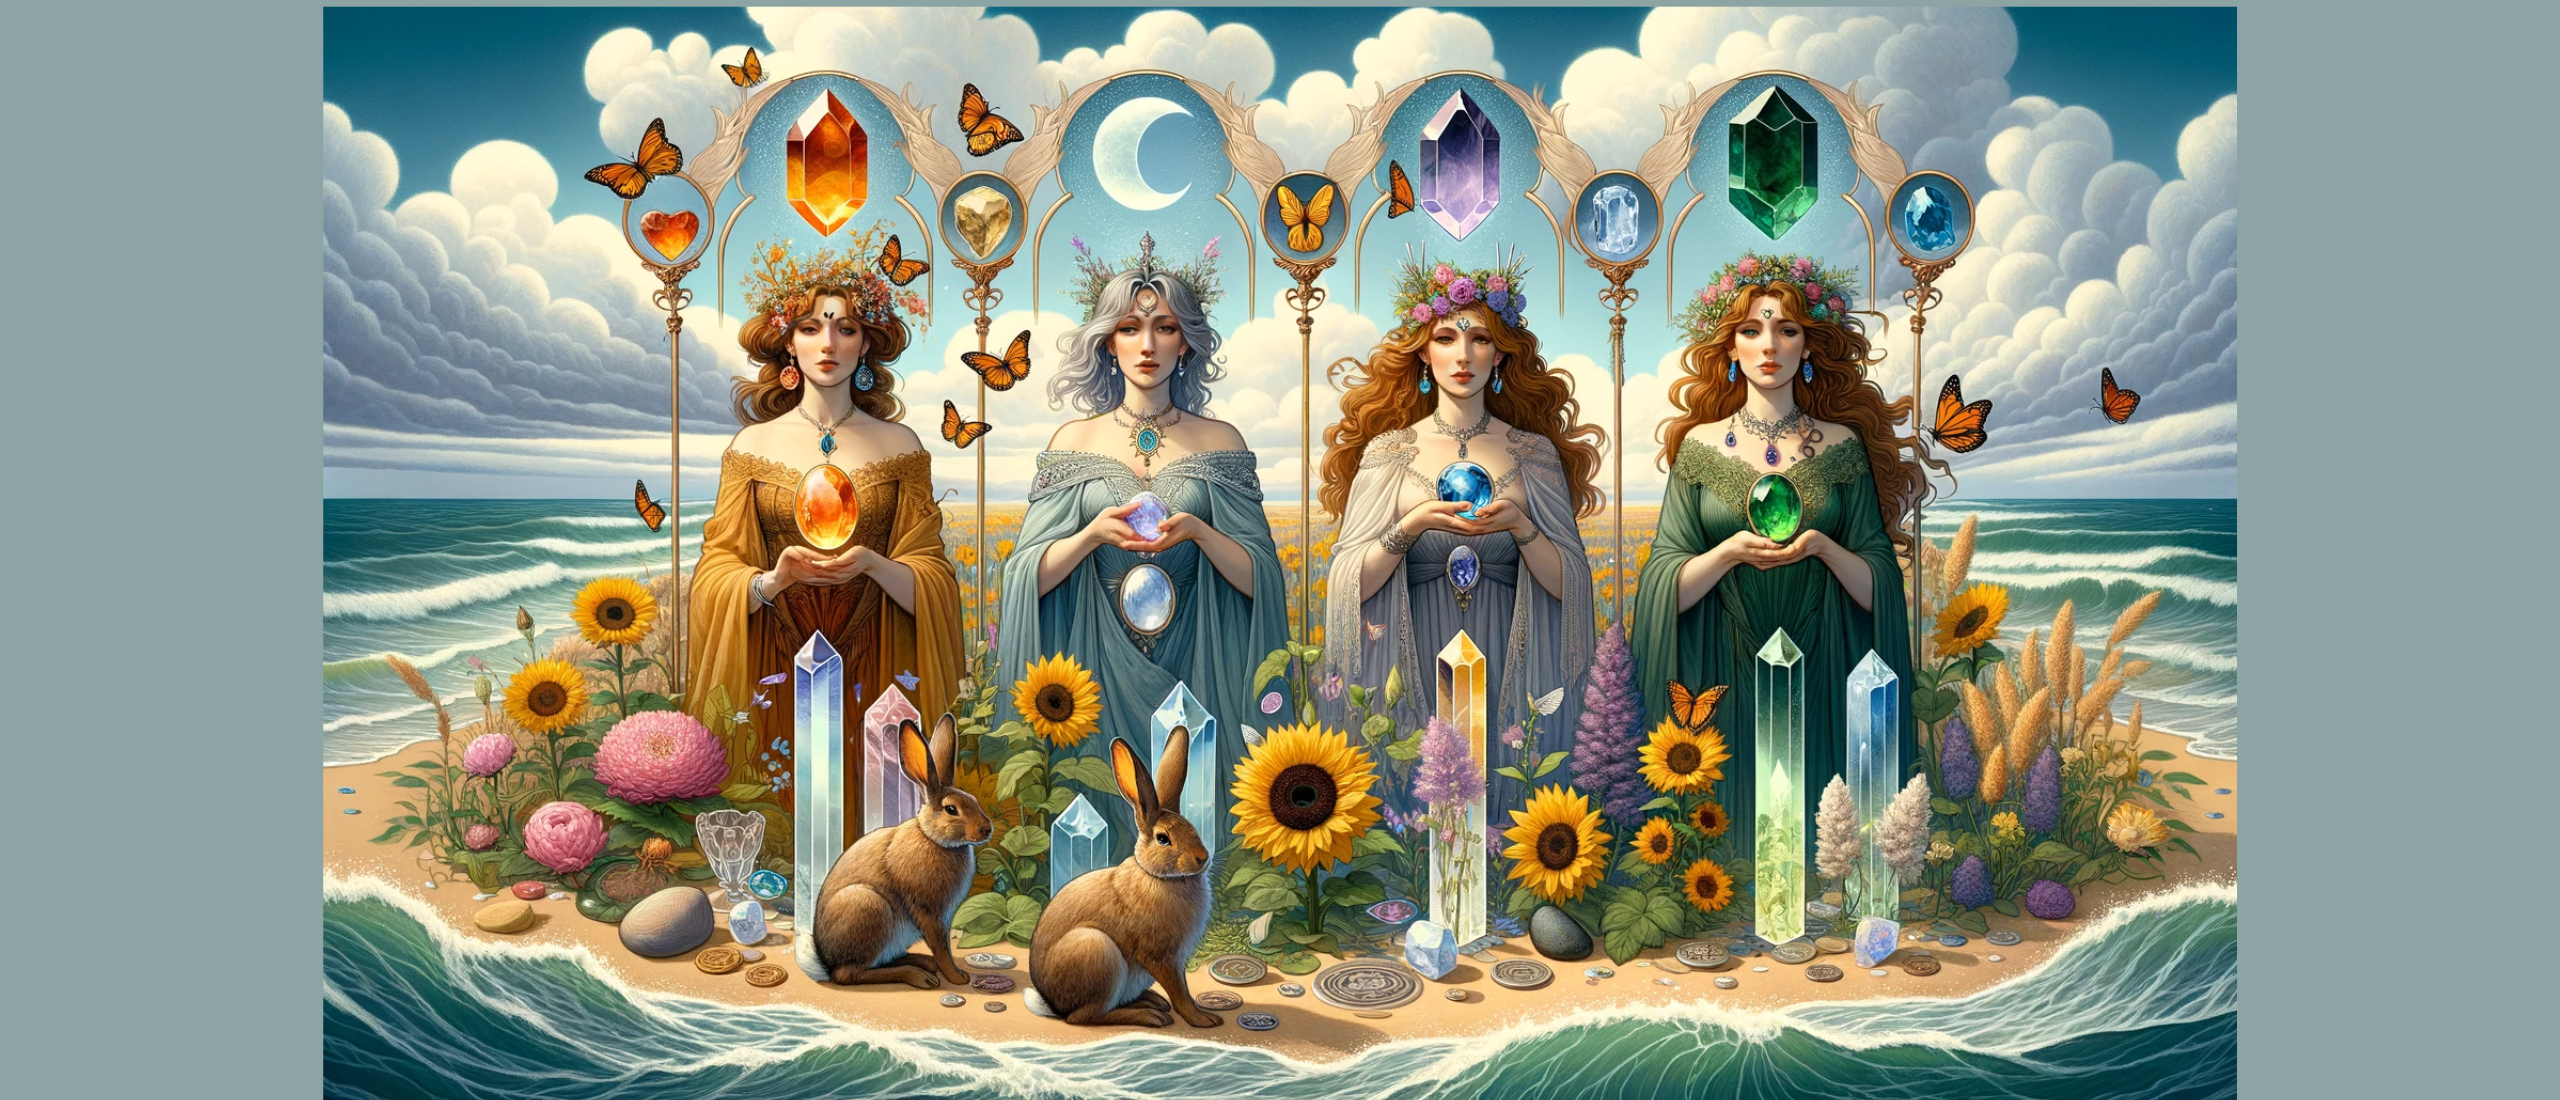 Symboliek van de Koninginnen in de tarot : Kracht, Godinnen en Mineralen